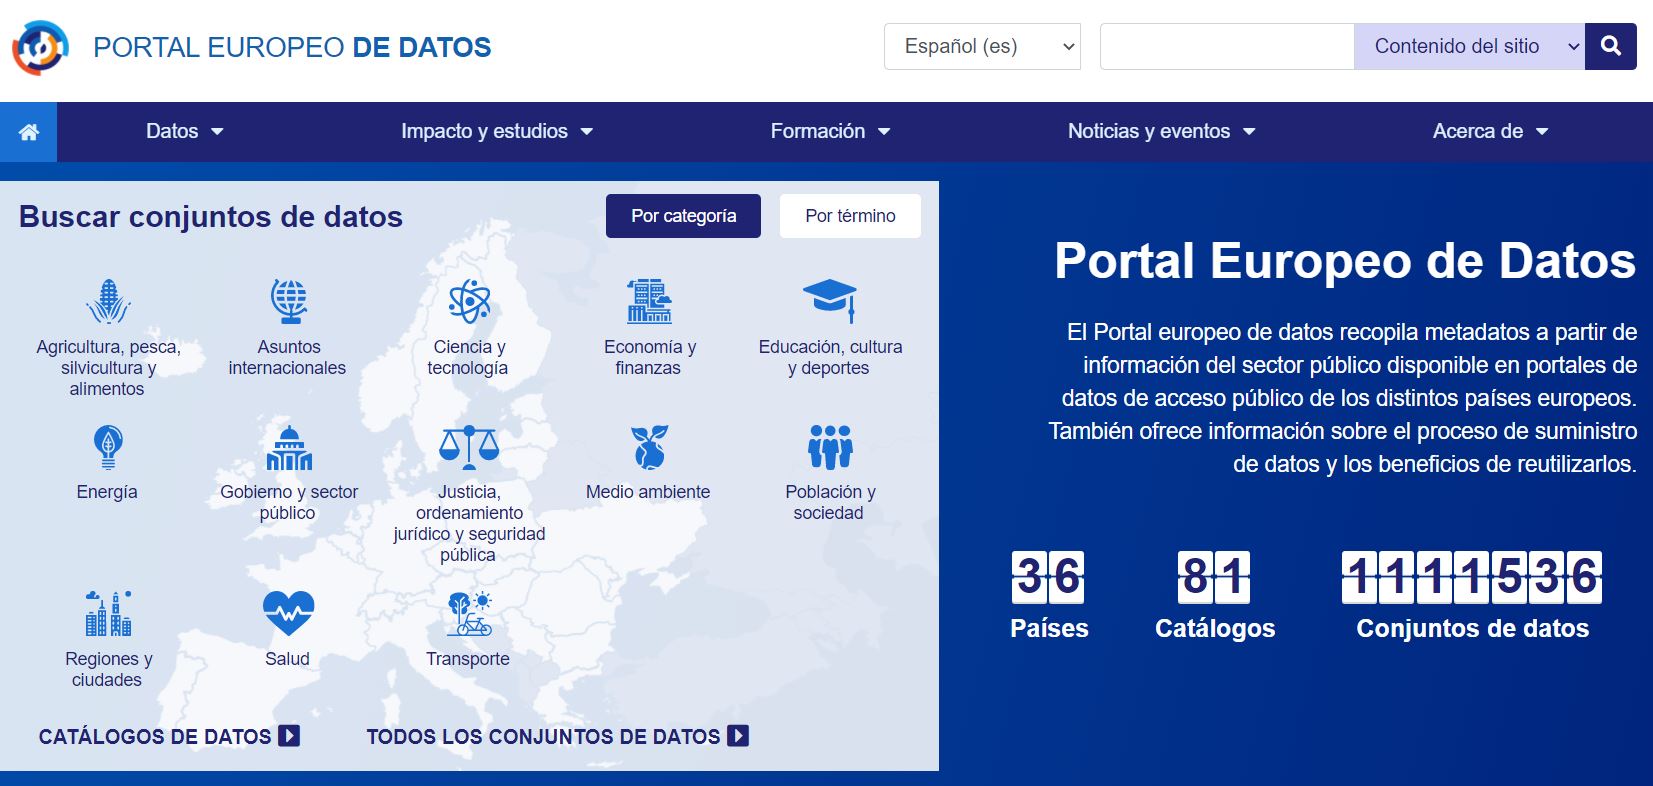 Conoce los datos abiertos gracias al Portal Europeo de Datos, Canarias Datos Abiertos